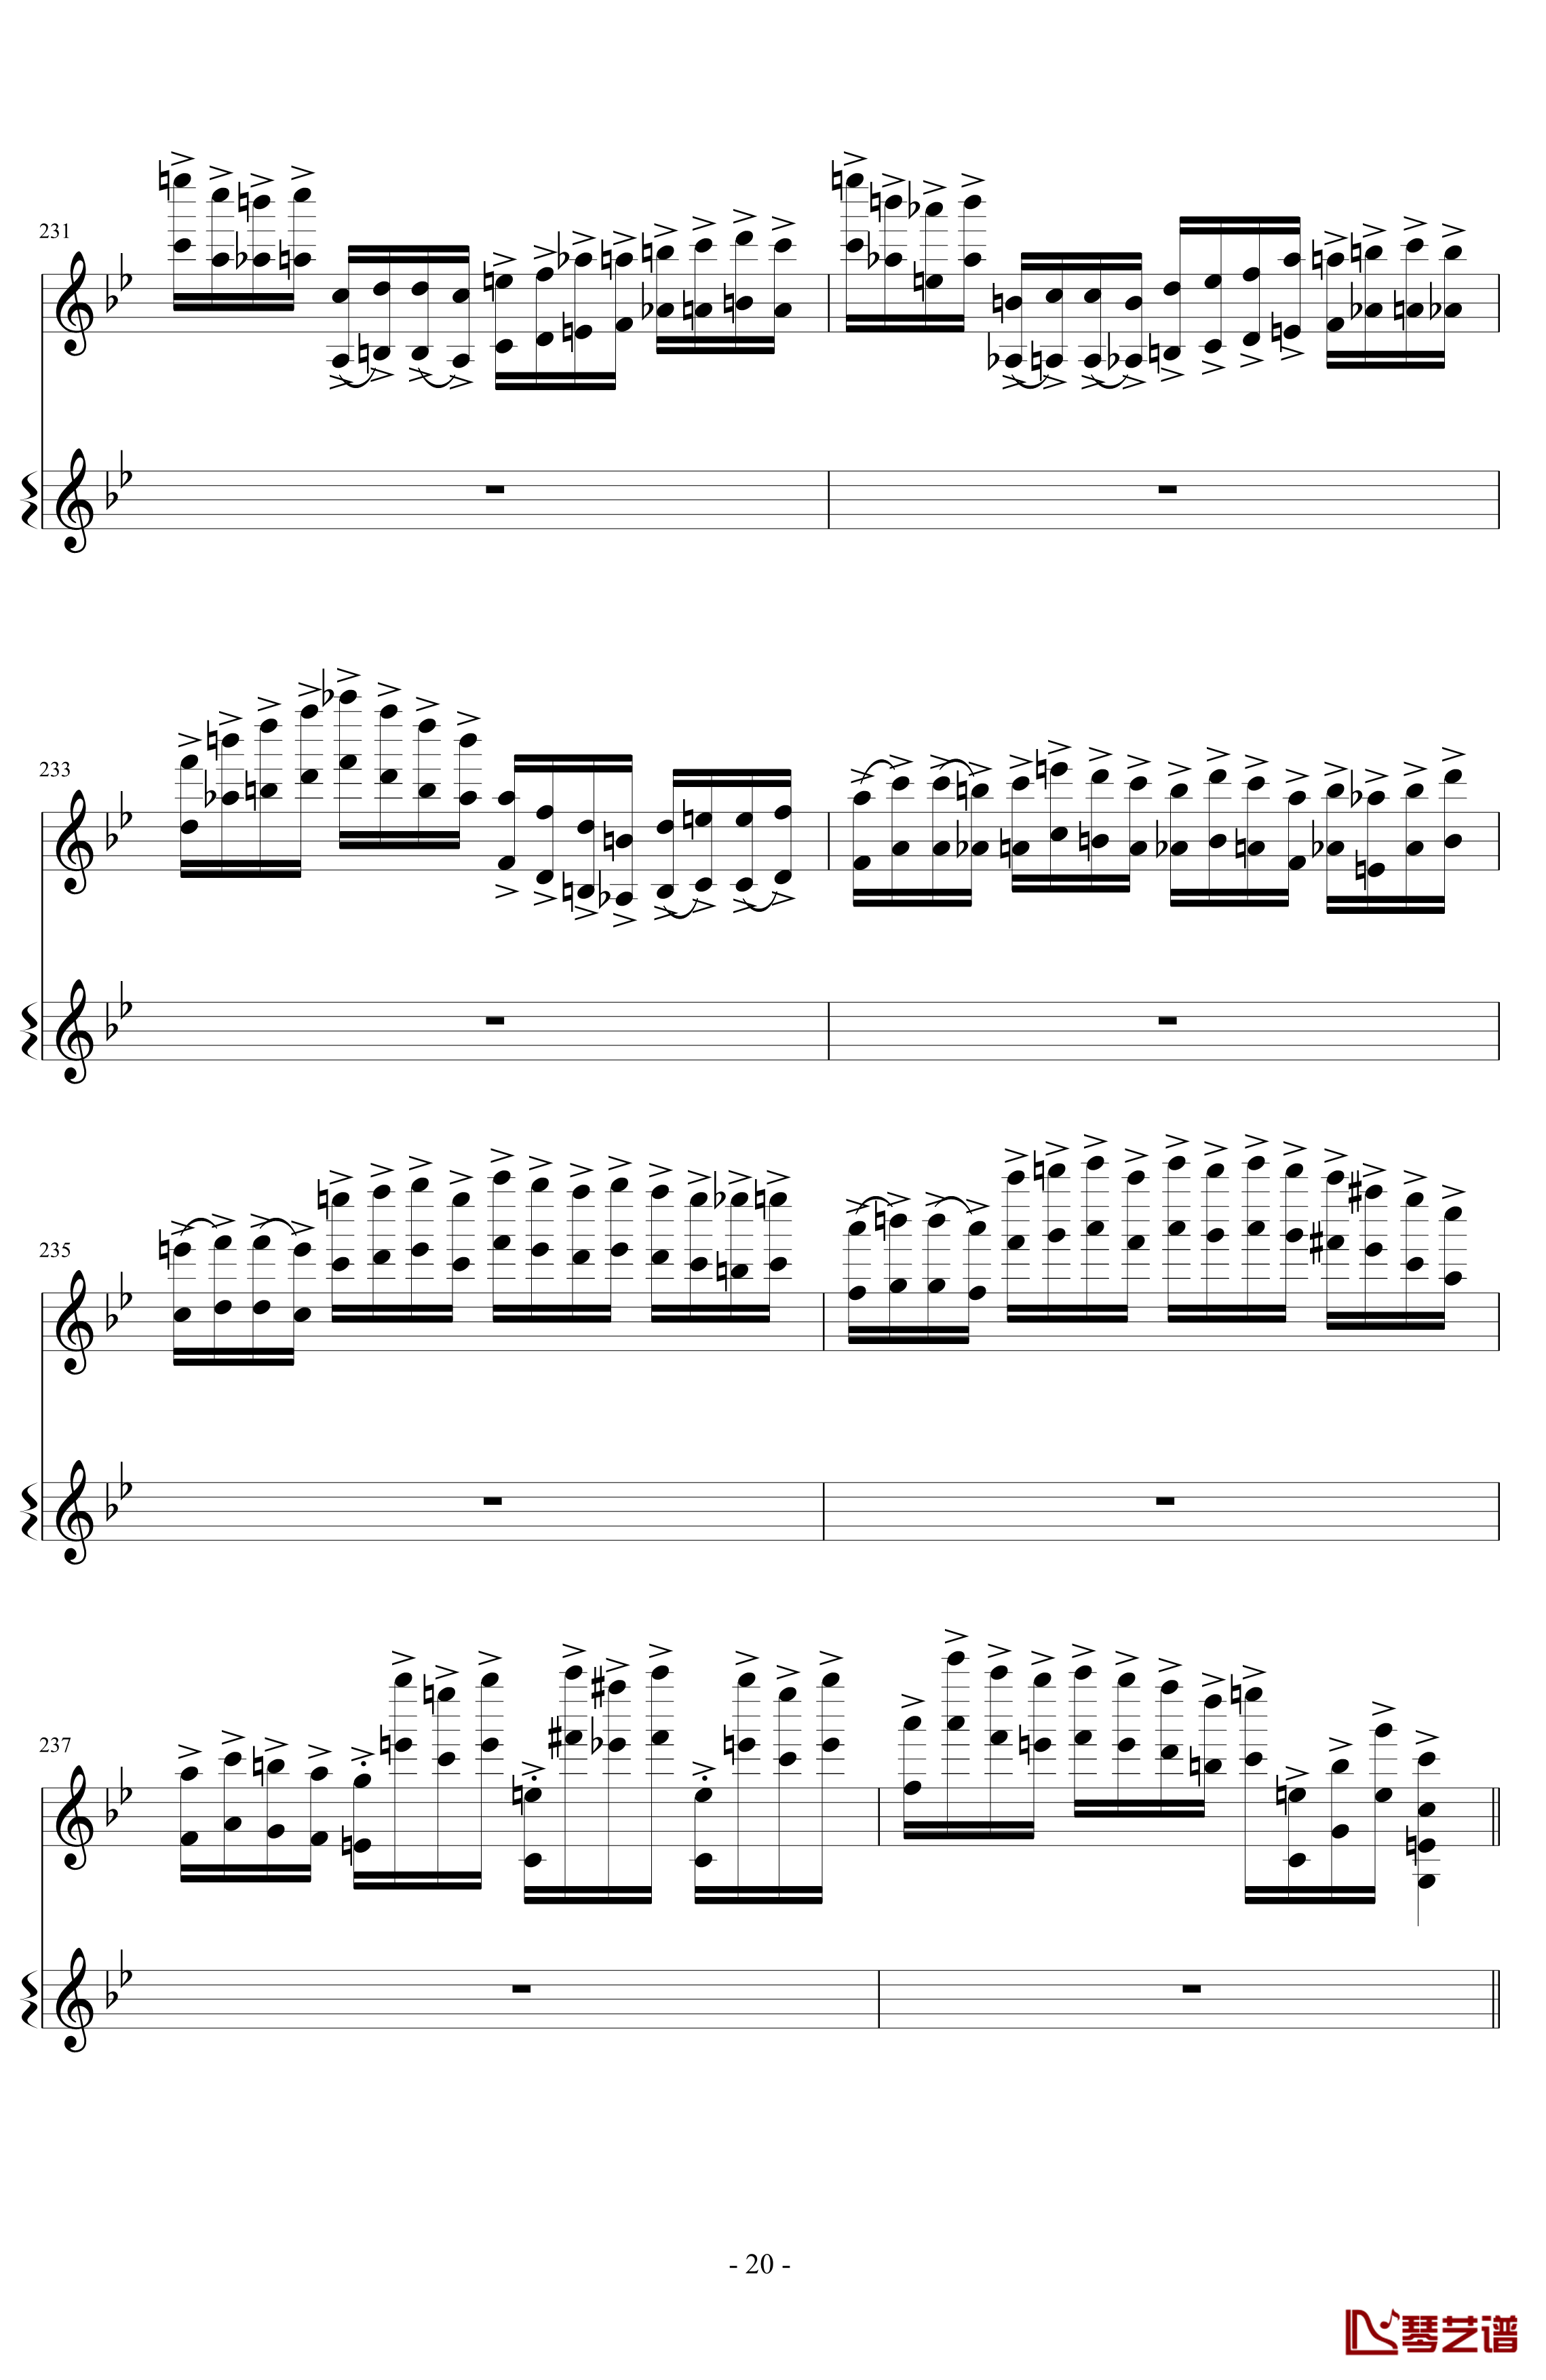 意大利国歌变奏曲钢琴谱-DXF20